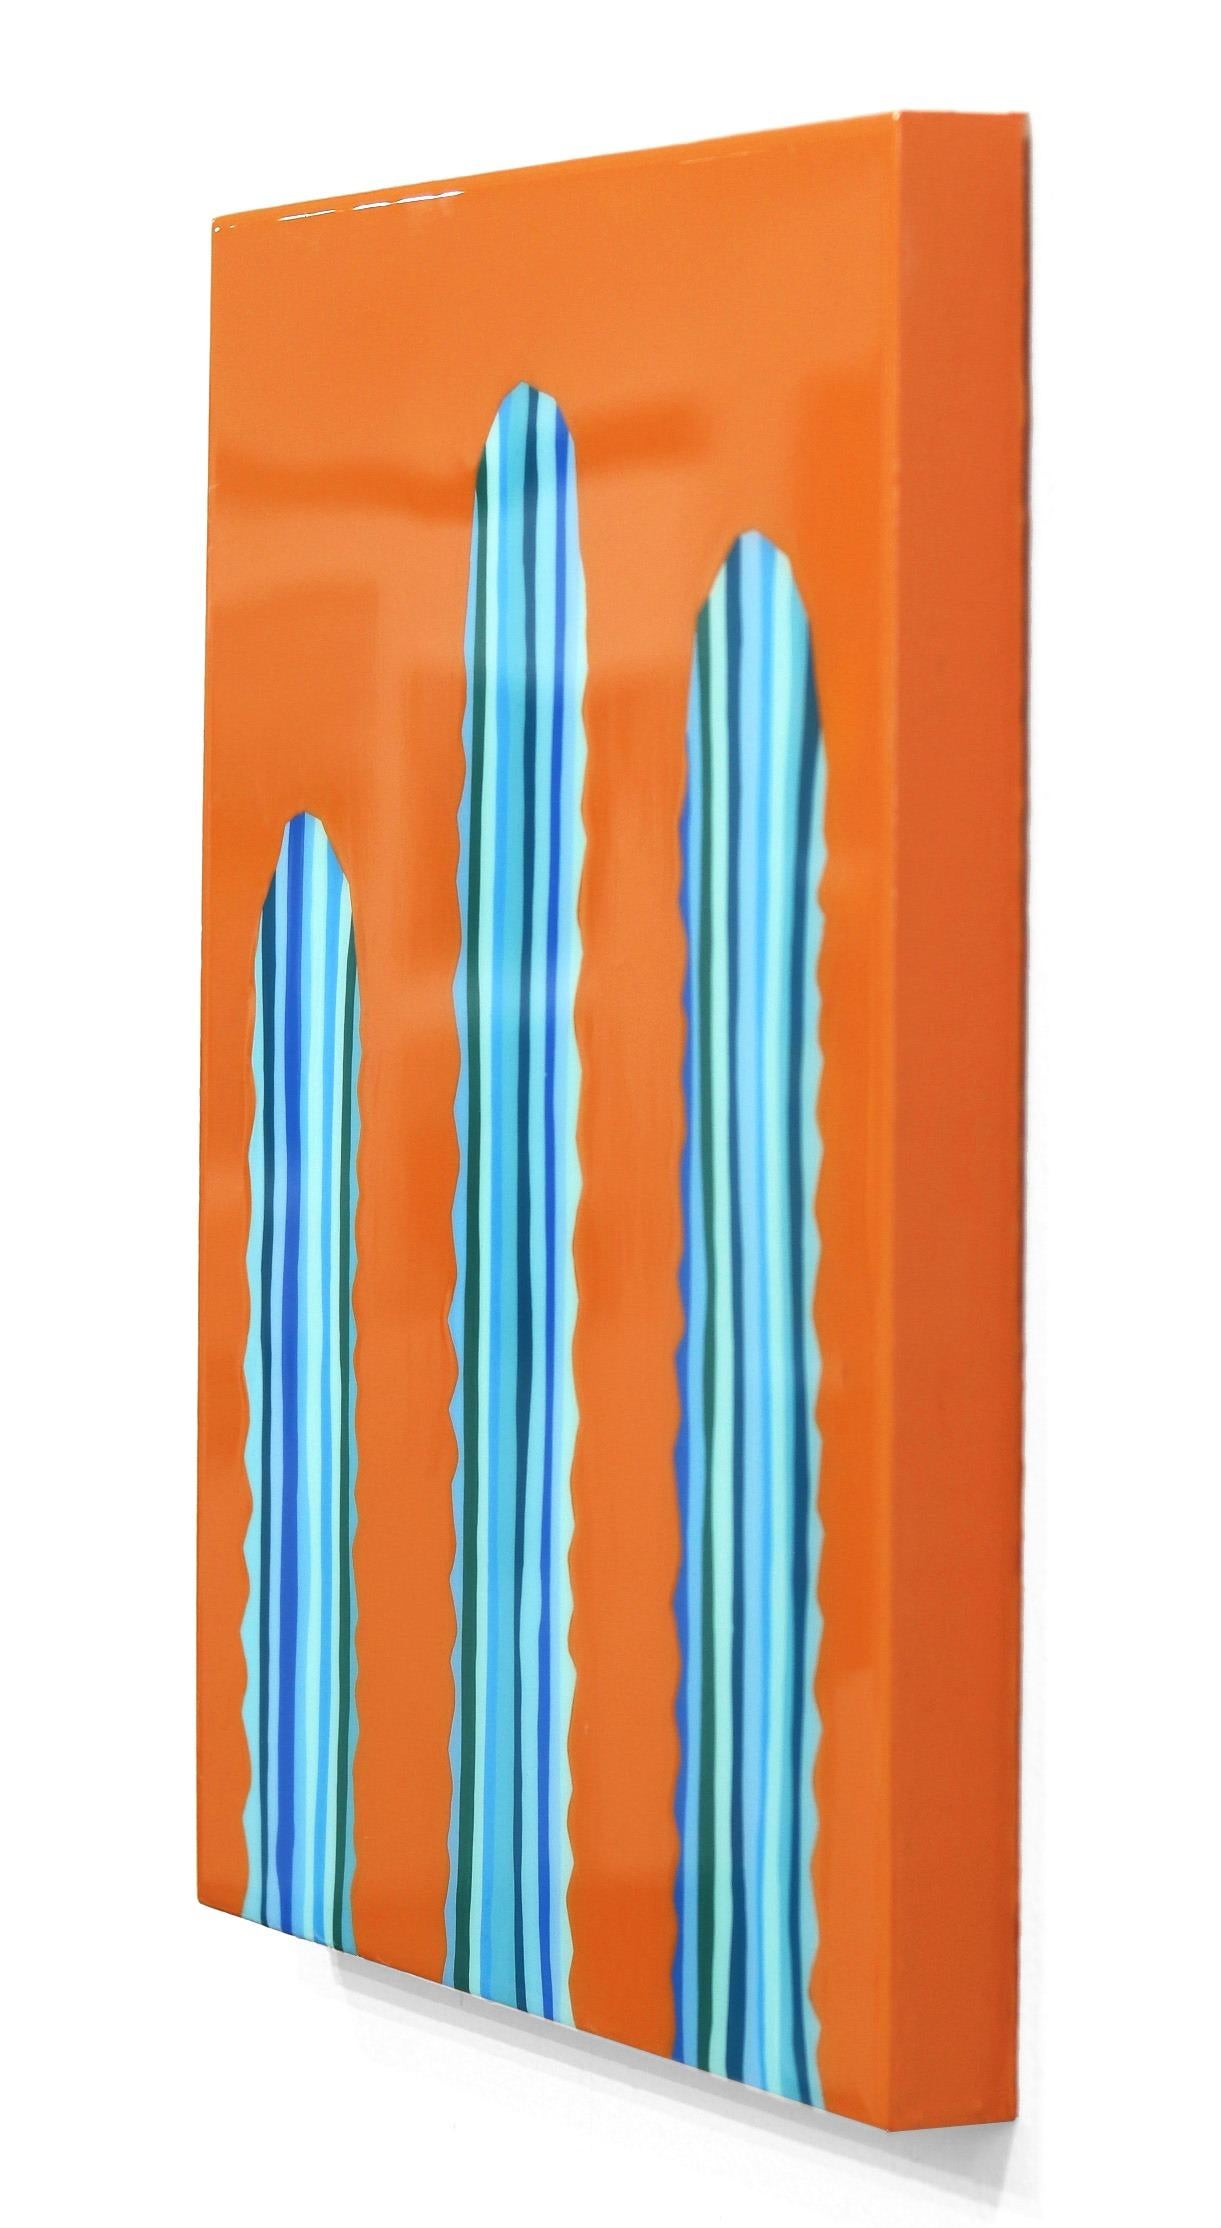 Poco Jugo – lebhaftes orange-blaues, vom Südwesten inspiriertes Pop-Art-Kactus-Gemälde (Orange), Landscape Painting, von Will Beger